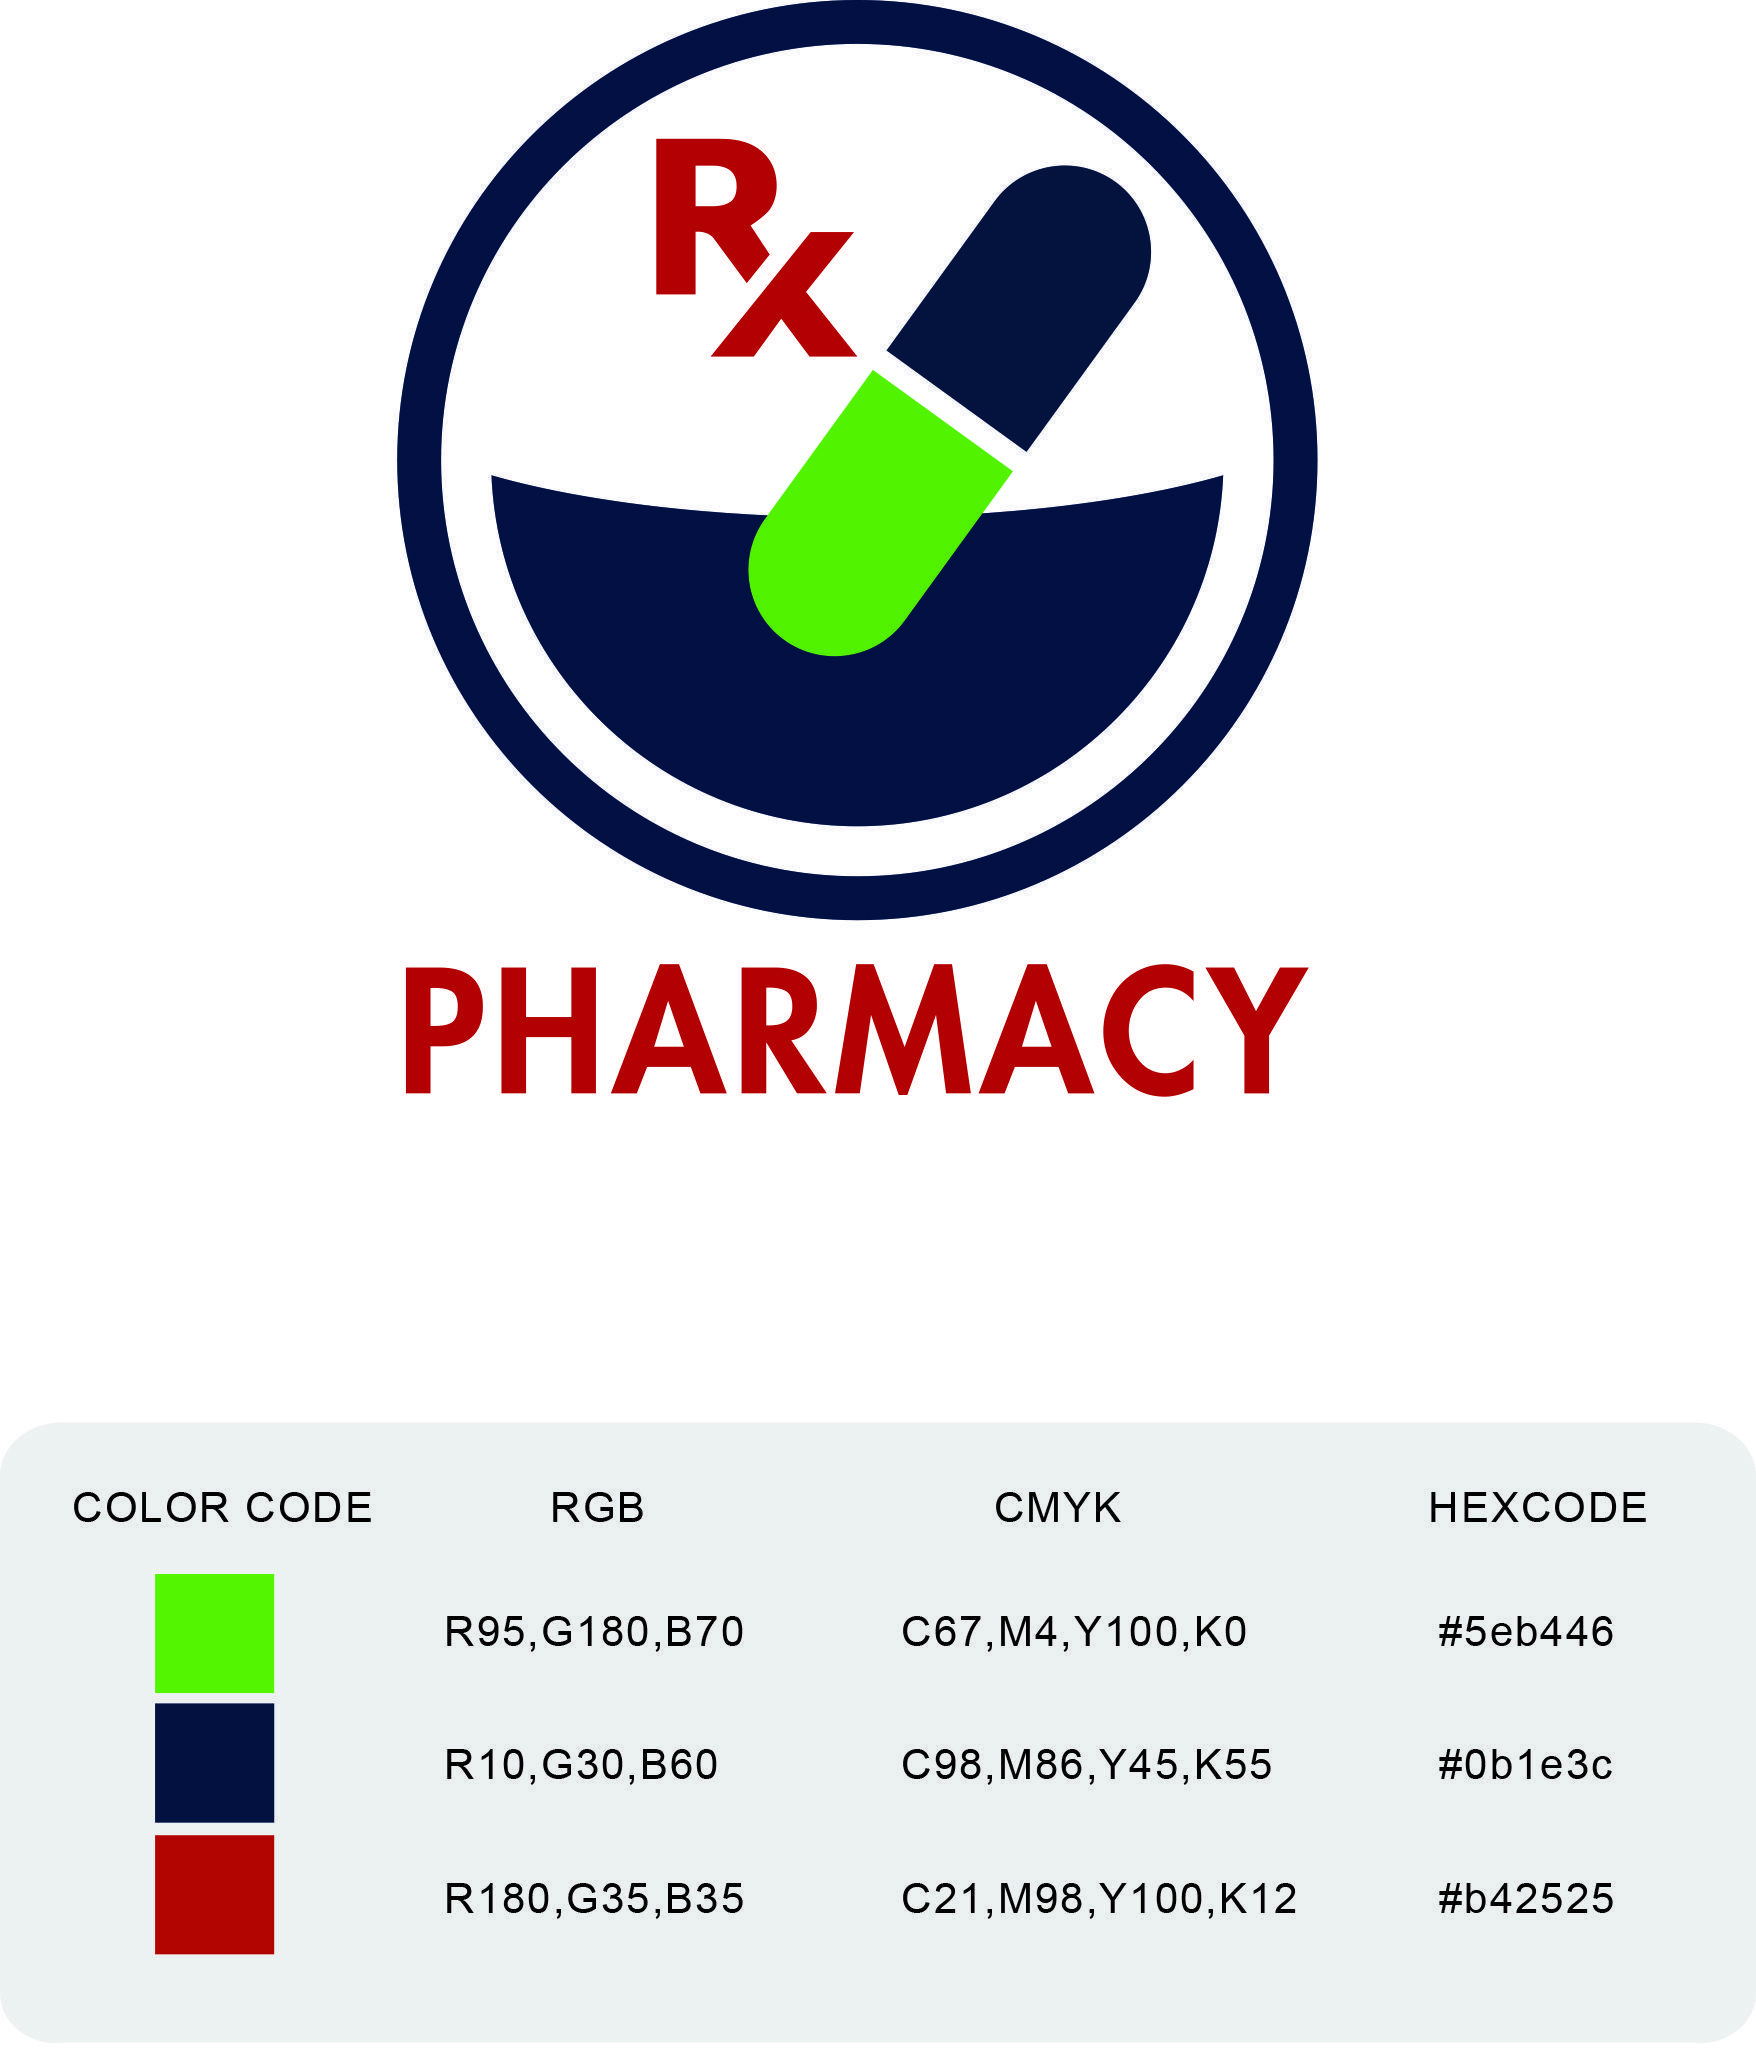 Pharmacy Logo - Malaysian Pharmaceutical Society